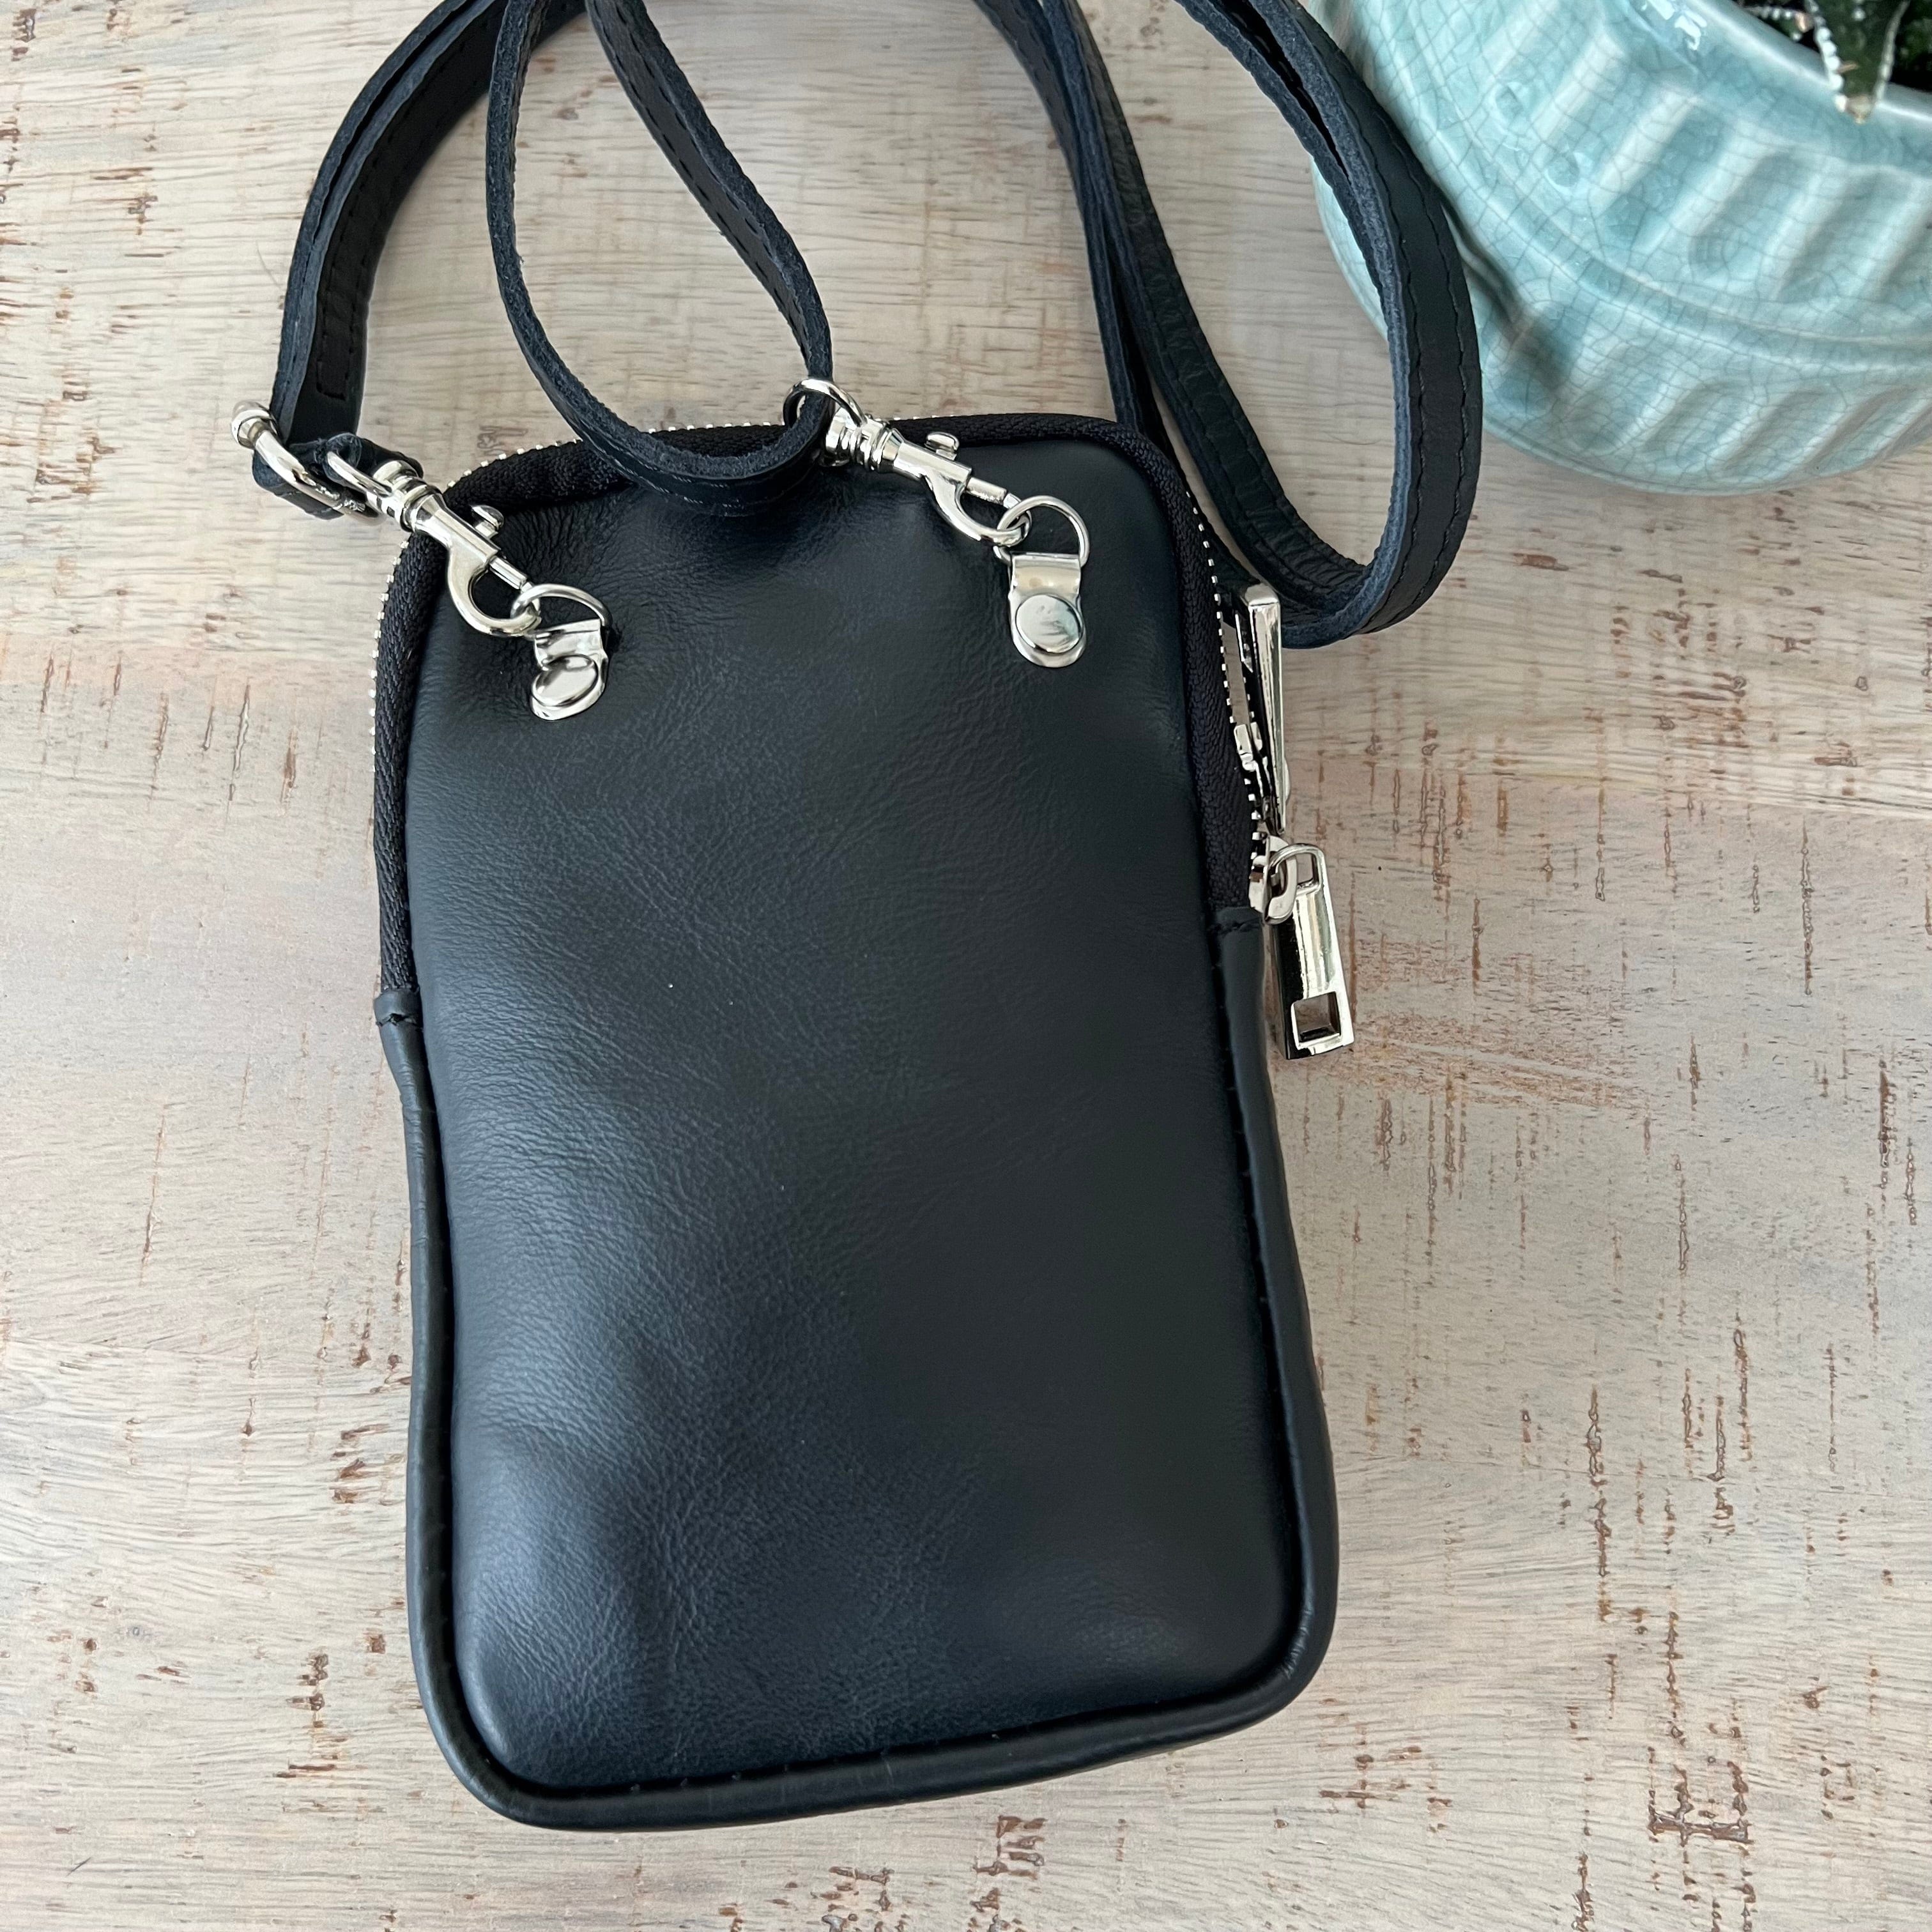 lusciousscarves Handbags Italian leather pouch, mini crossbody bag